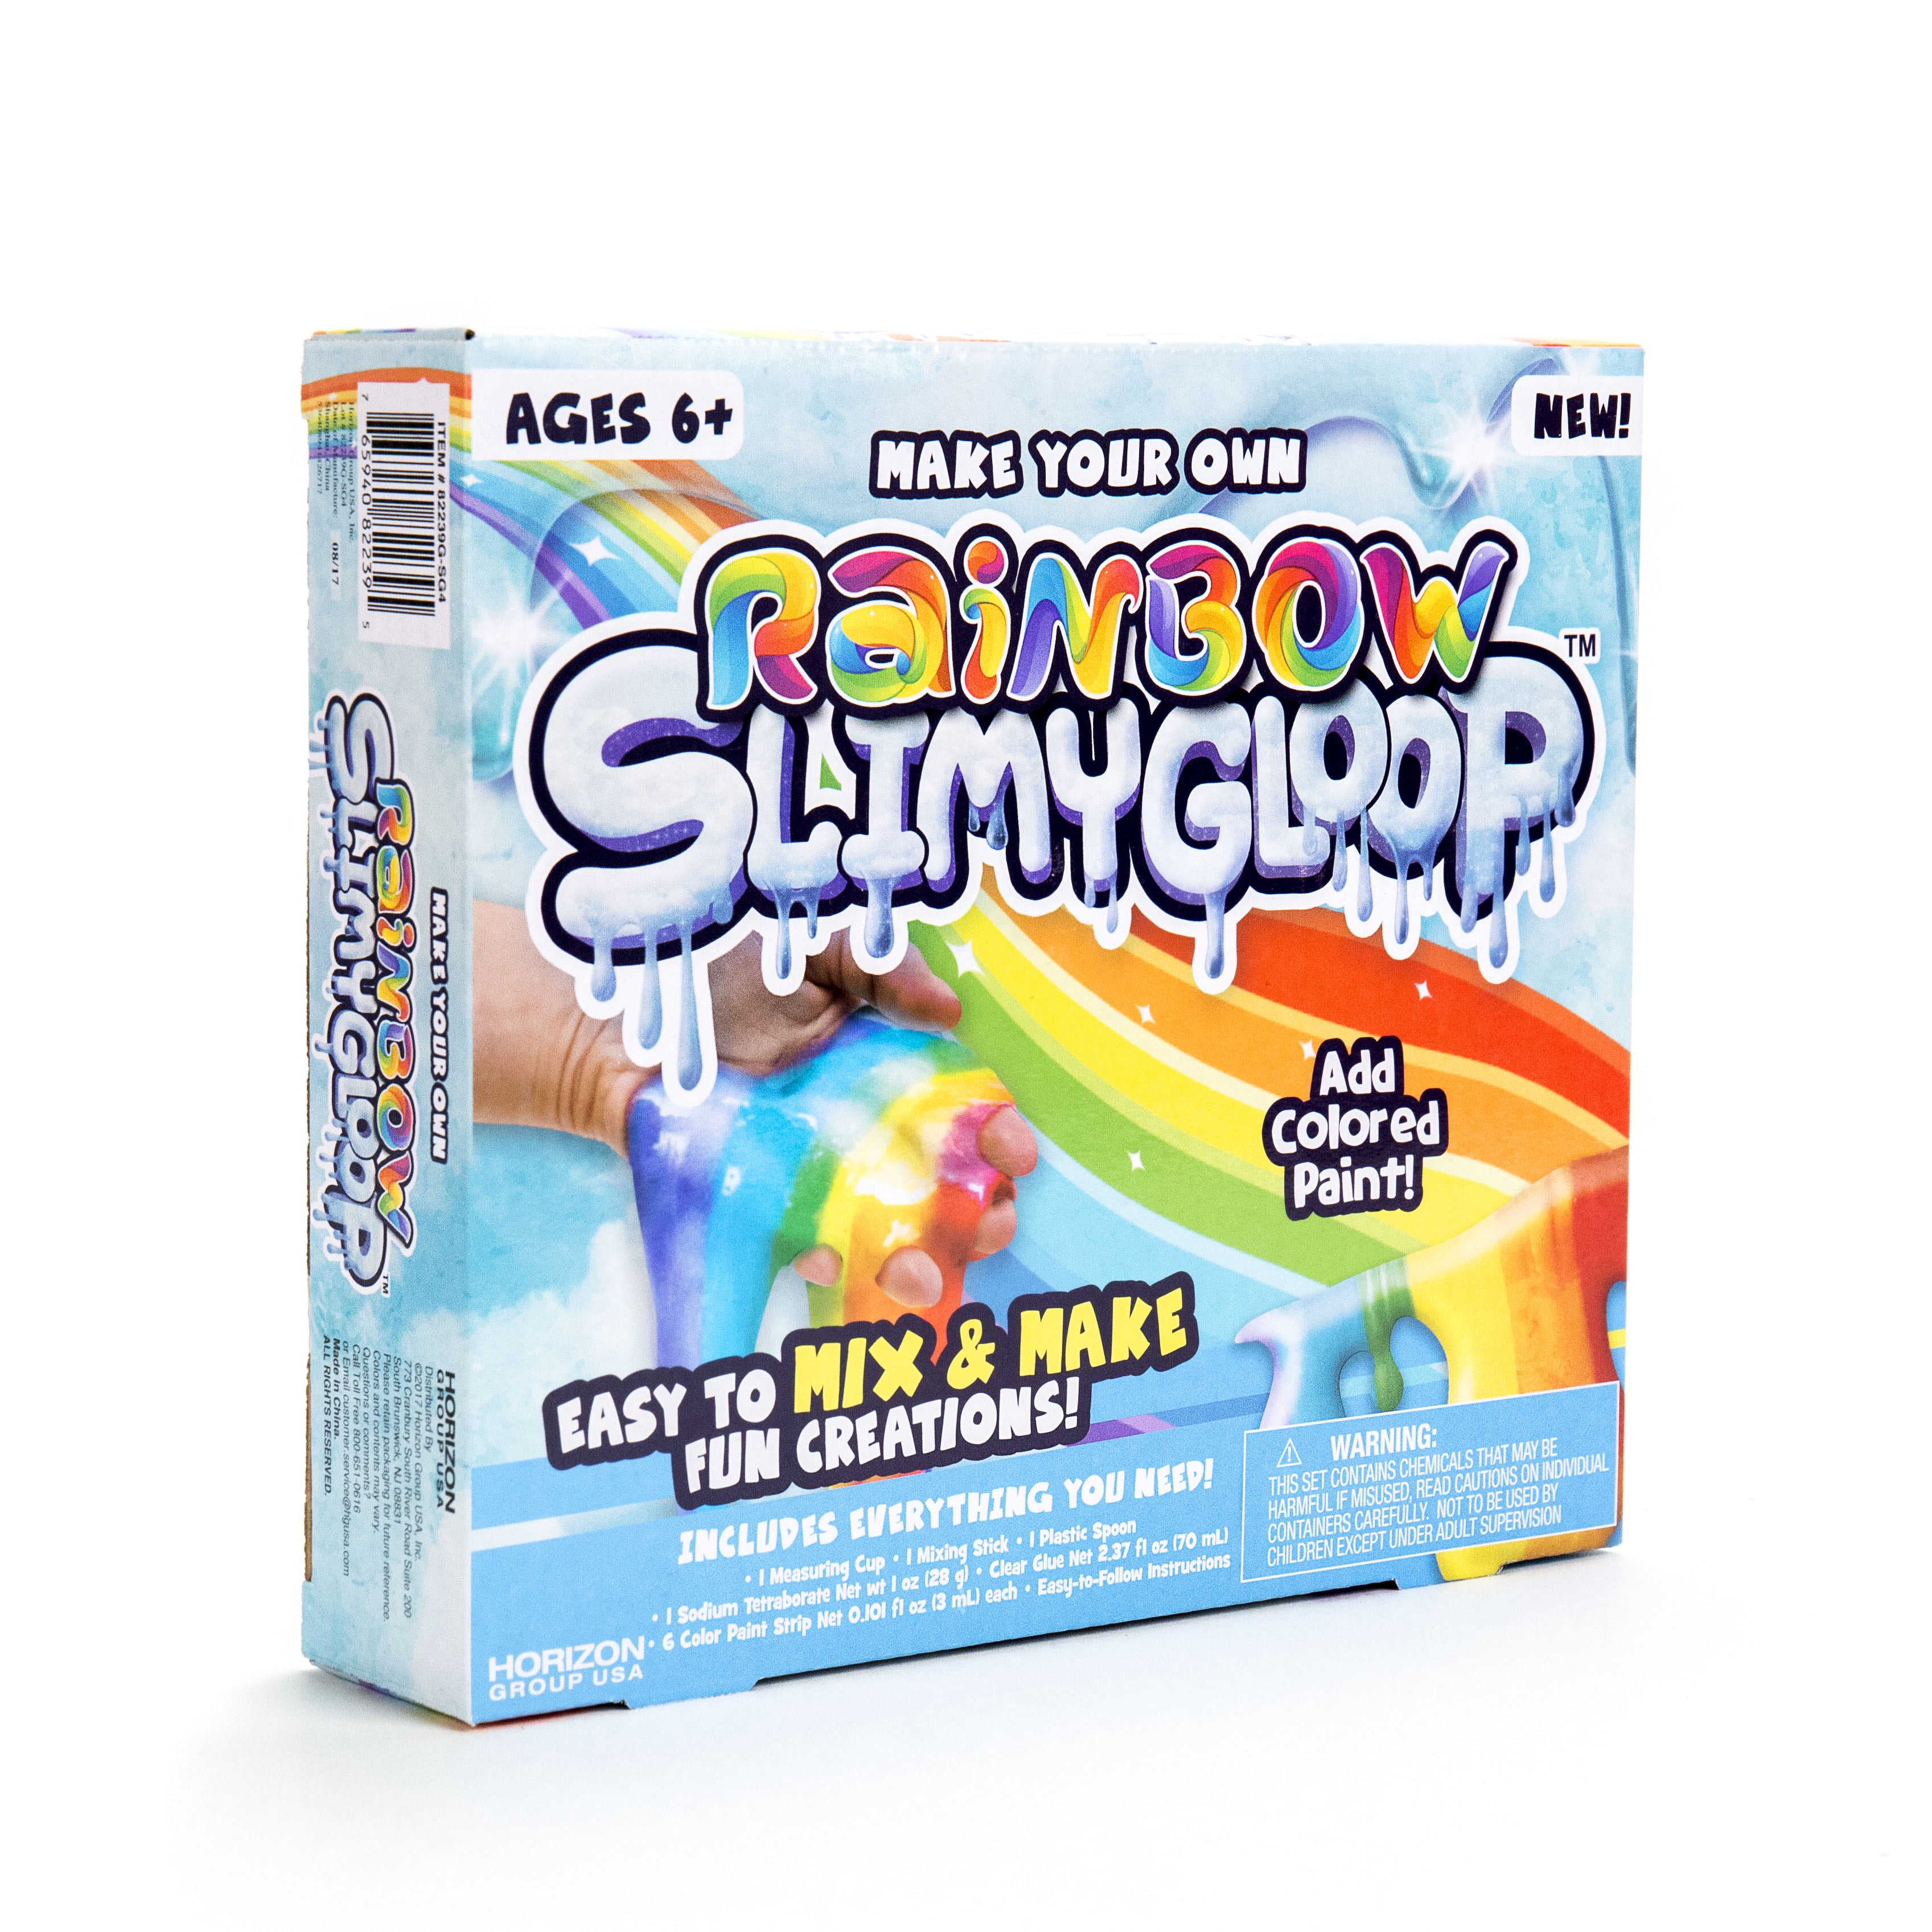 Holographic Shimmering Glitter Slimygloop Creations Slime Maker Kids Craft 